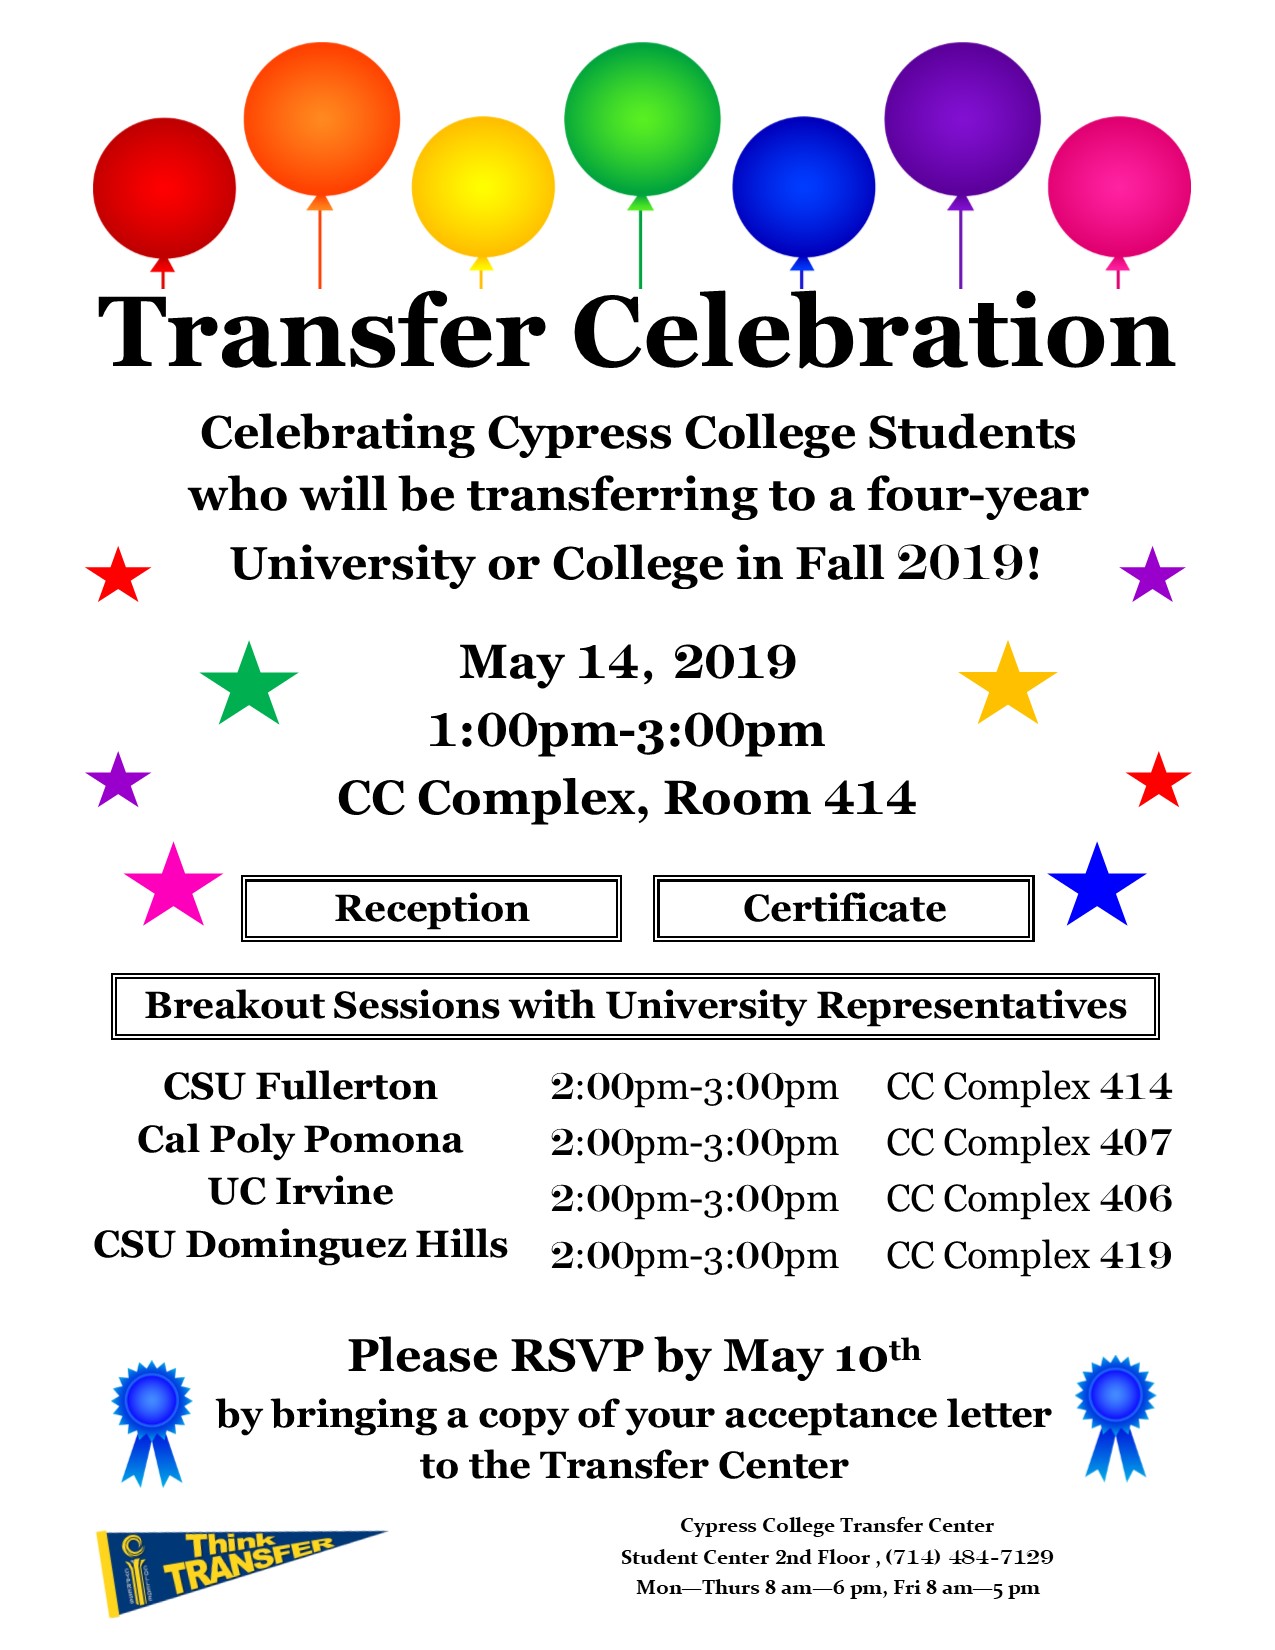 Transfer Celebration flyer